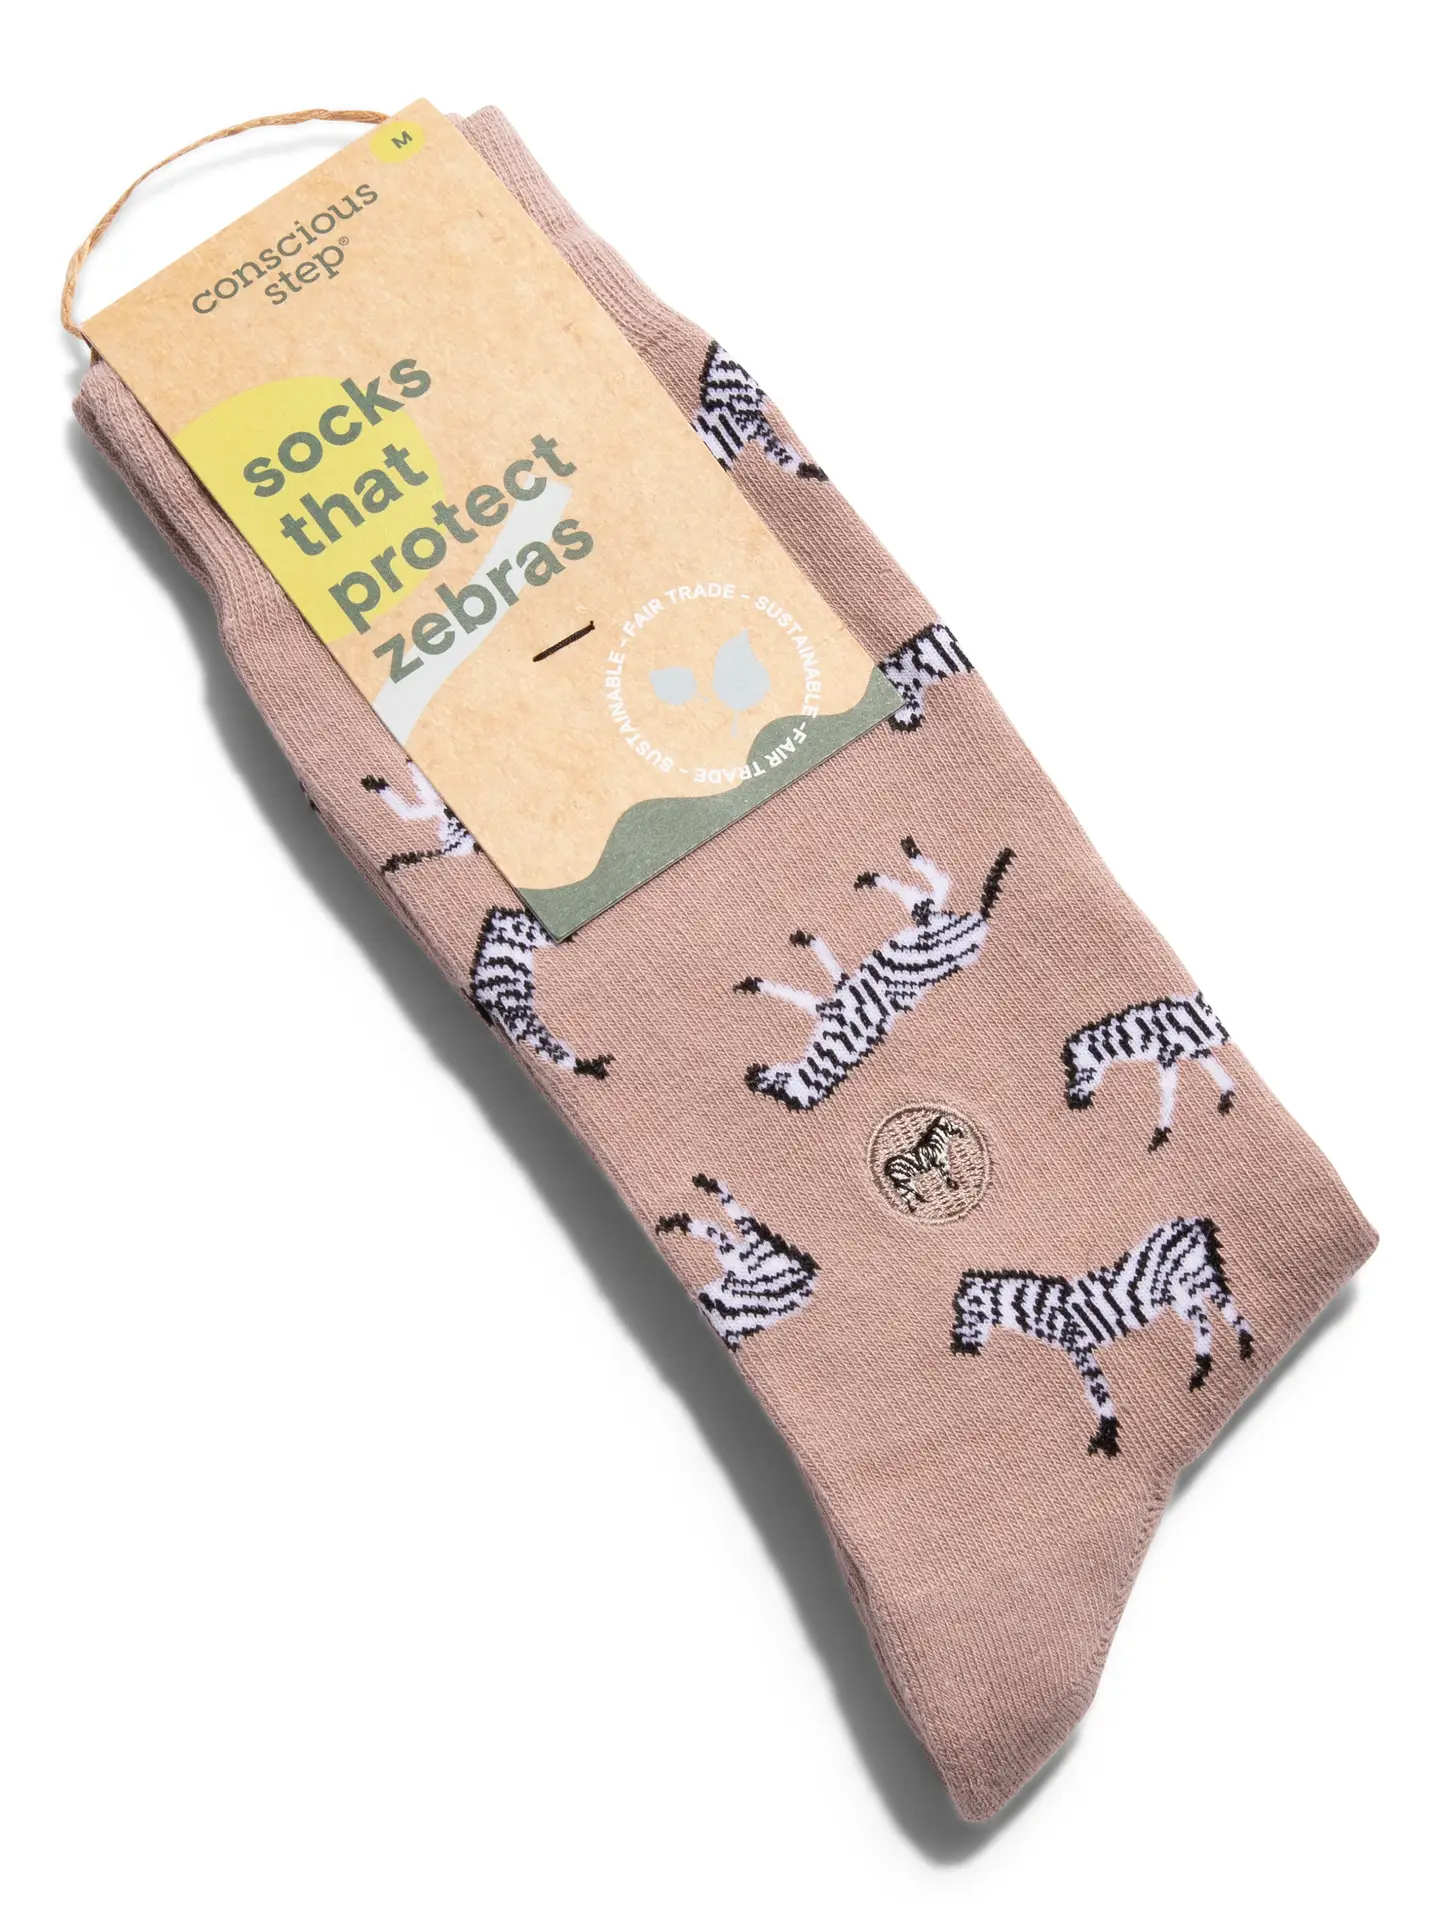 Socks That Protect Zebras